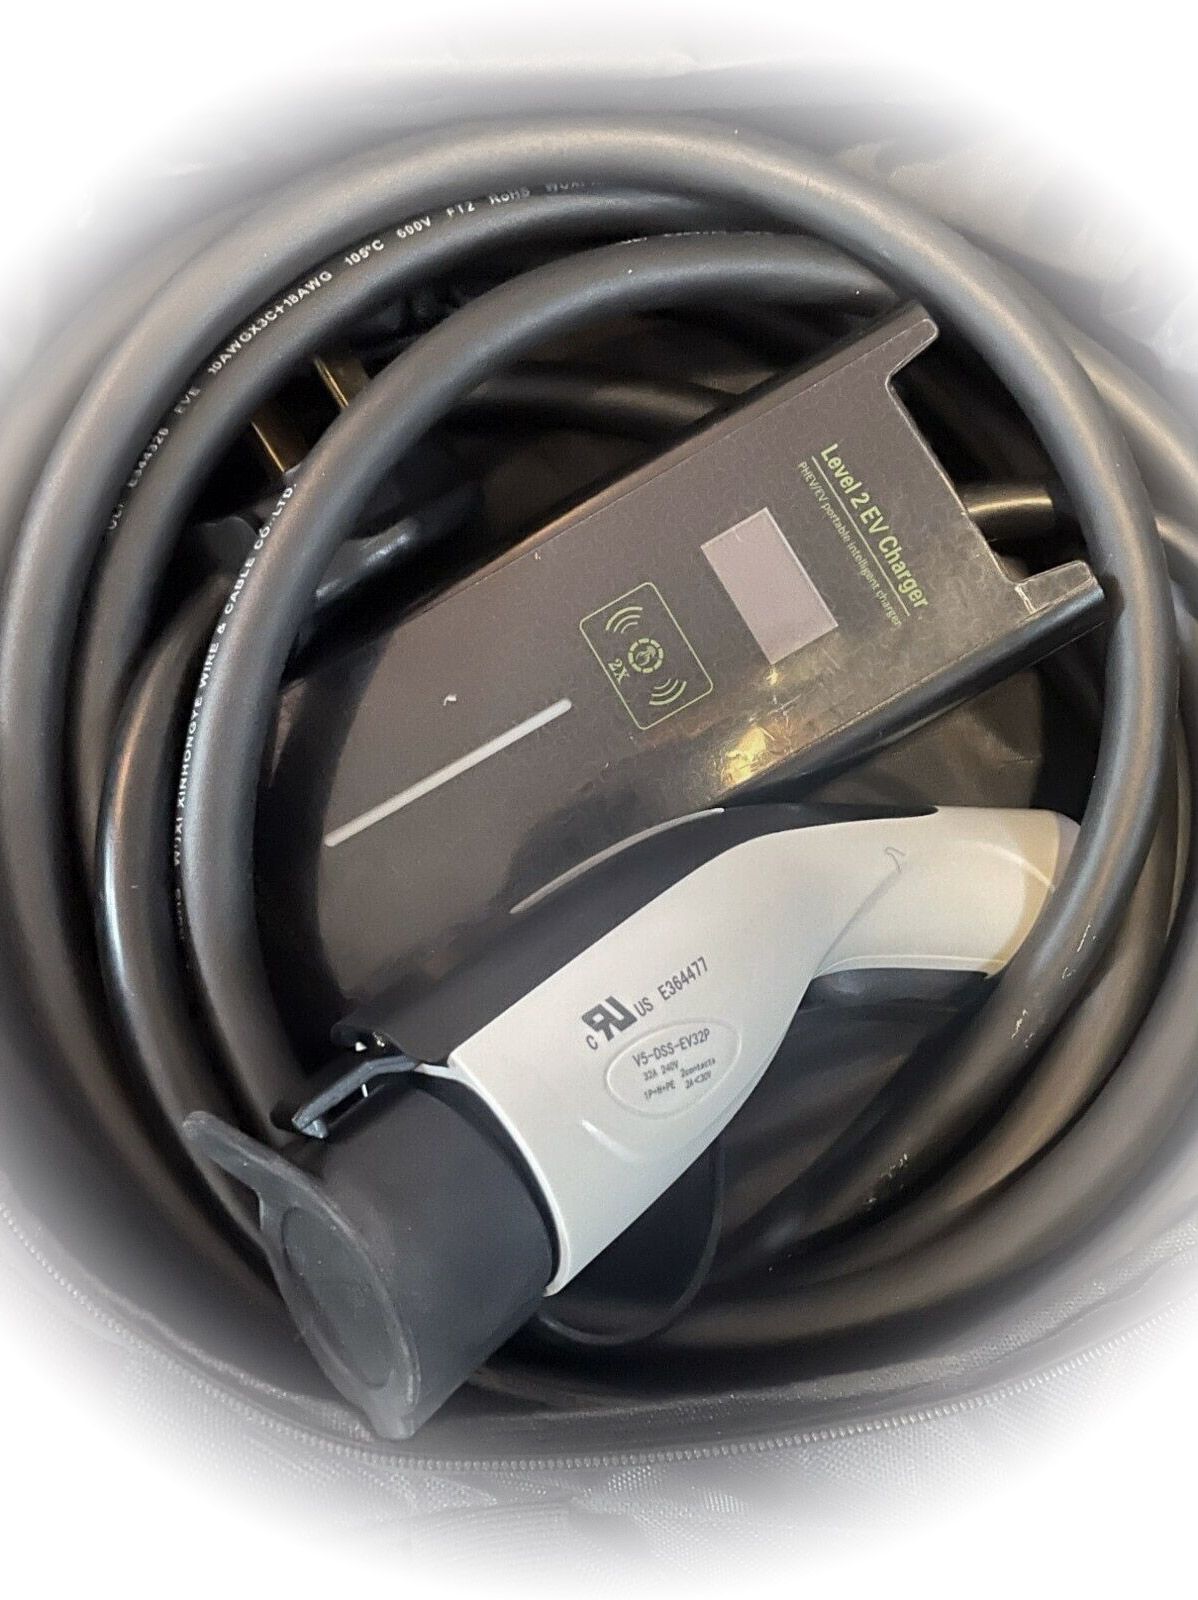 ZENCAR Level 1 Portable EV Charger 1.44 kW (120Volt, 20ft/6m Cable, 12 Amp) NEMA 5-15 Plug, Timing Delay